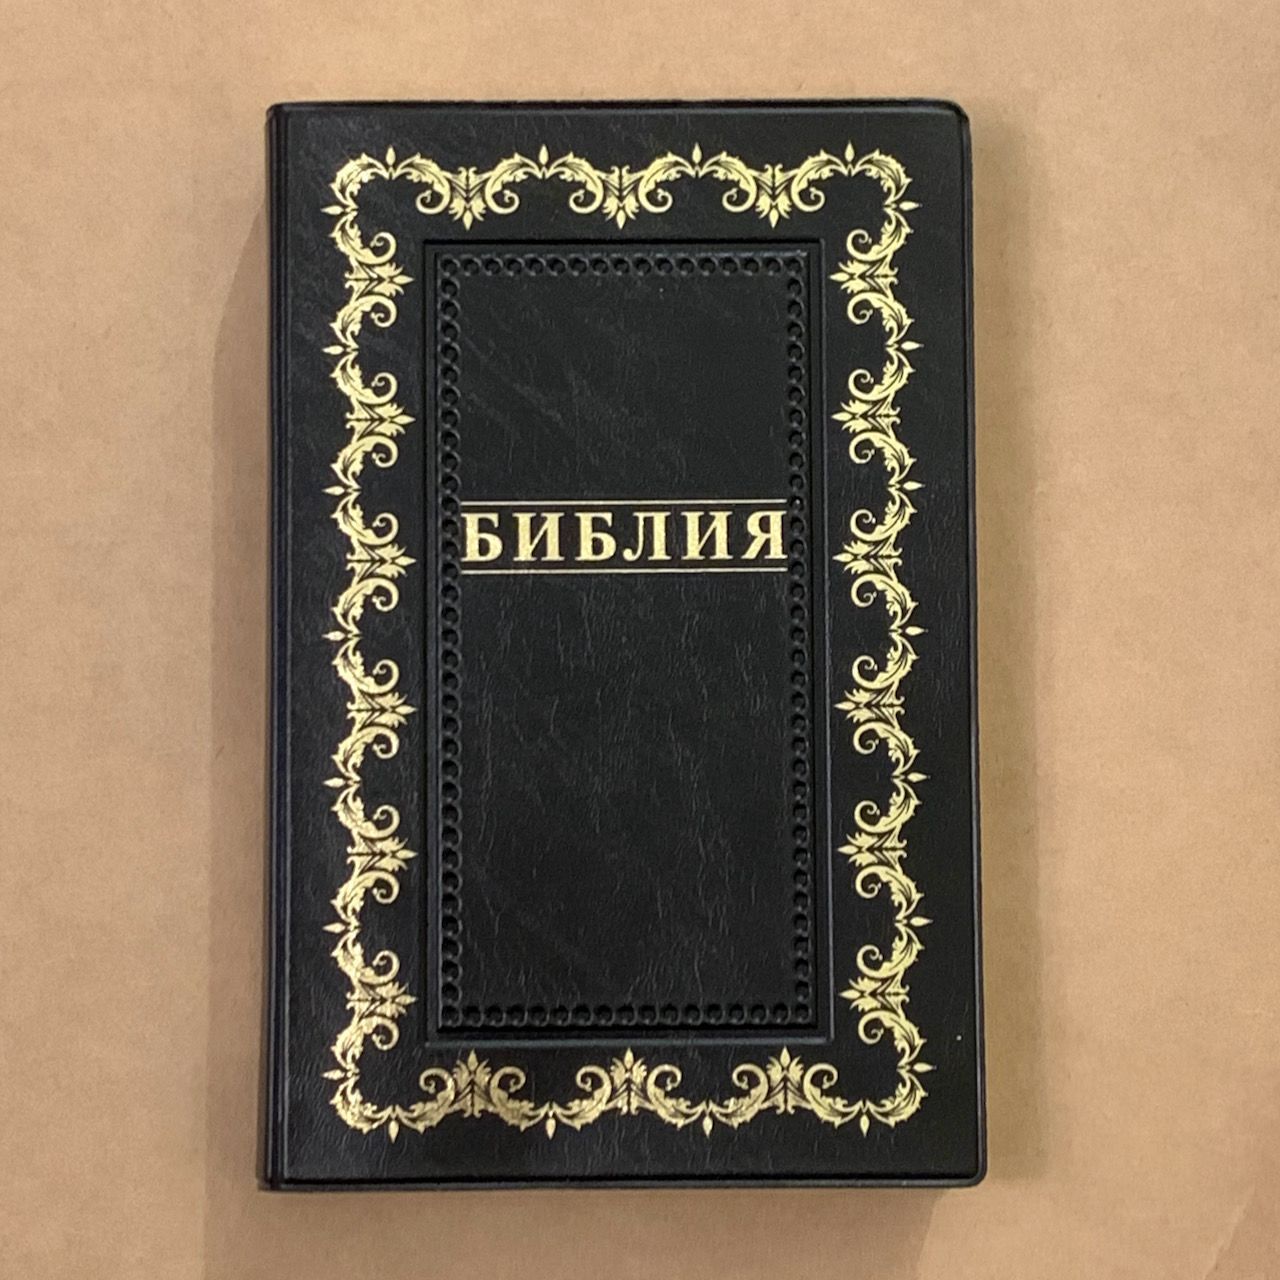 Библия 055 код B1 7073 переплет из искусственной кожи,  цвет черный, дизайн "золотая рамка с орнаментом по контуру", надпись "Библия", средний формат, 140*213 мм, параллельные места по центру страницы, золотой обрез, крупный шрифт